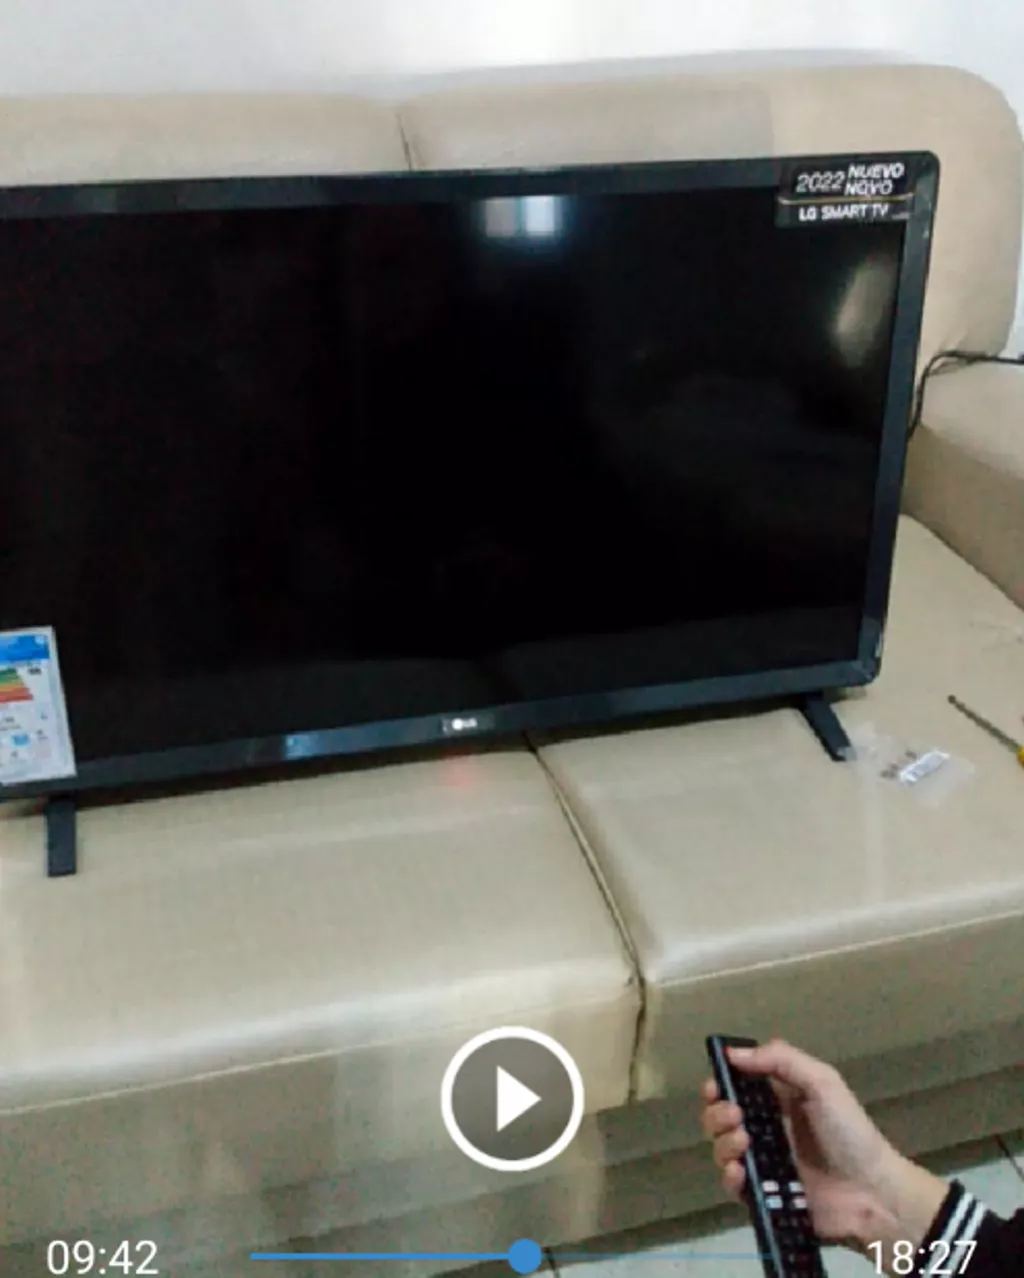 Smart TV LED 32 LG ThinQ AI HDR 32LQ620BPSB em Promoção é no Buscapé